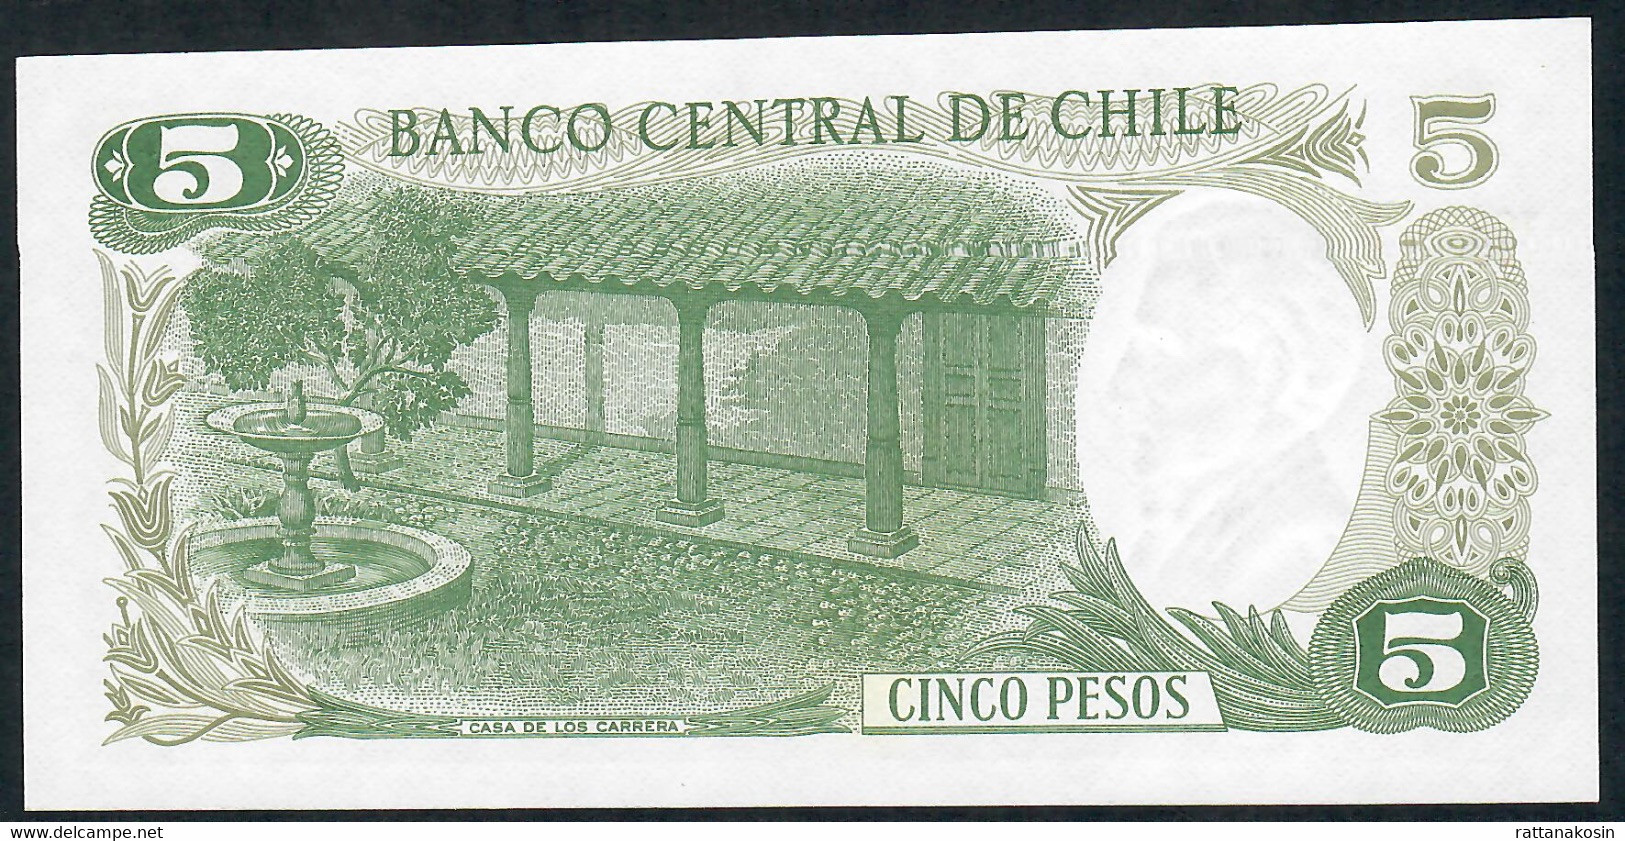 CHILE P149a 5 PESOS 1975 UNC. - Chili